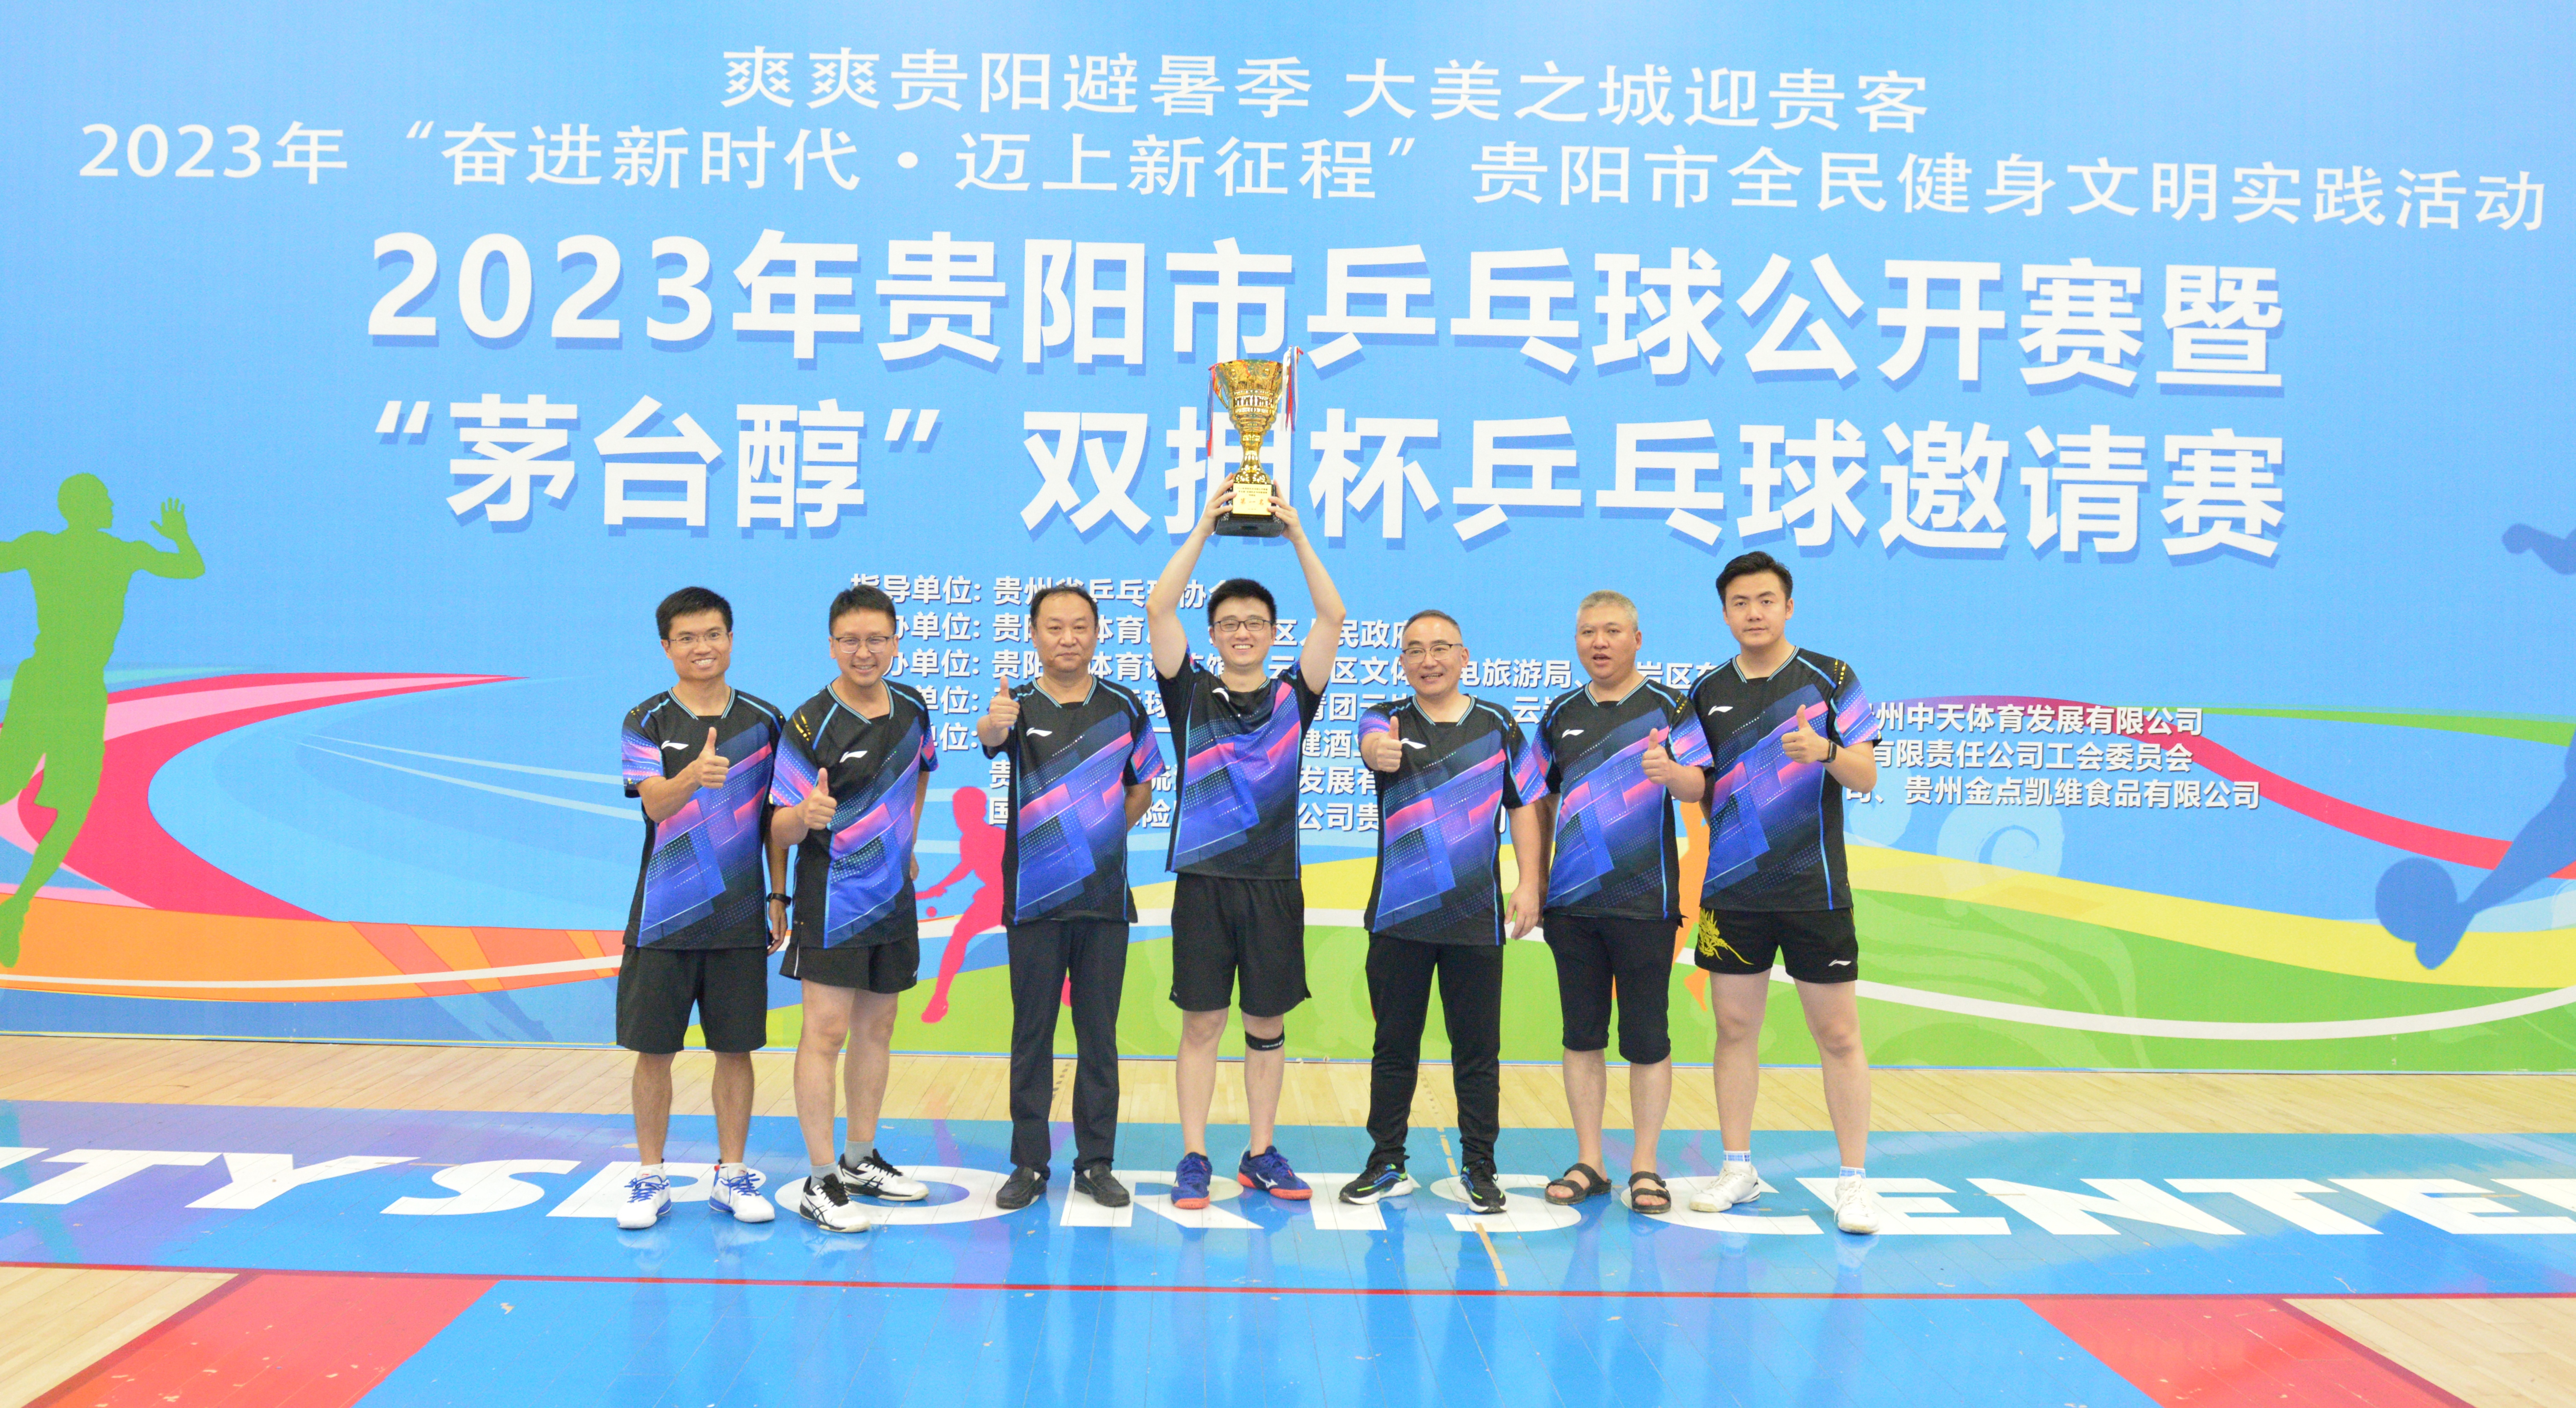 冠军！贵州铁投集团在贵阳市乒乓球公开赛中斩获佳绩